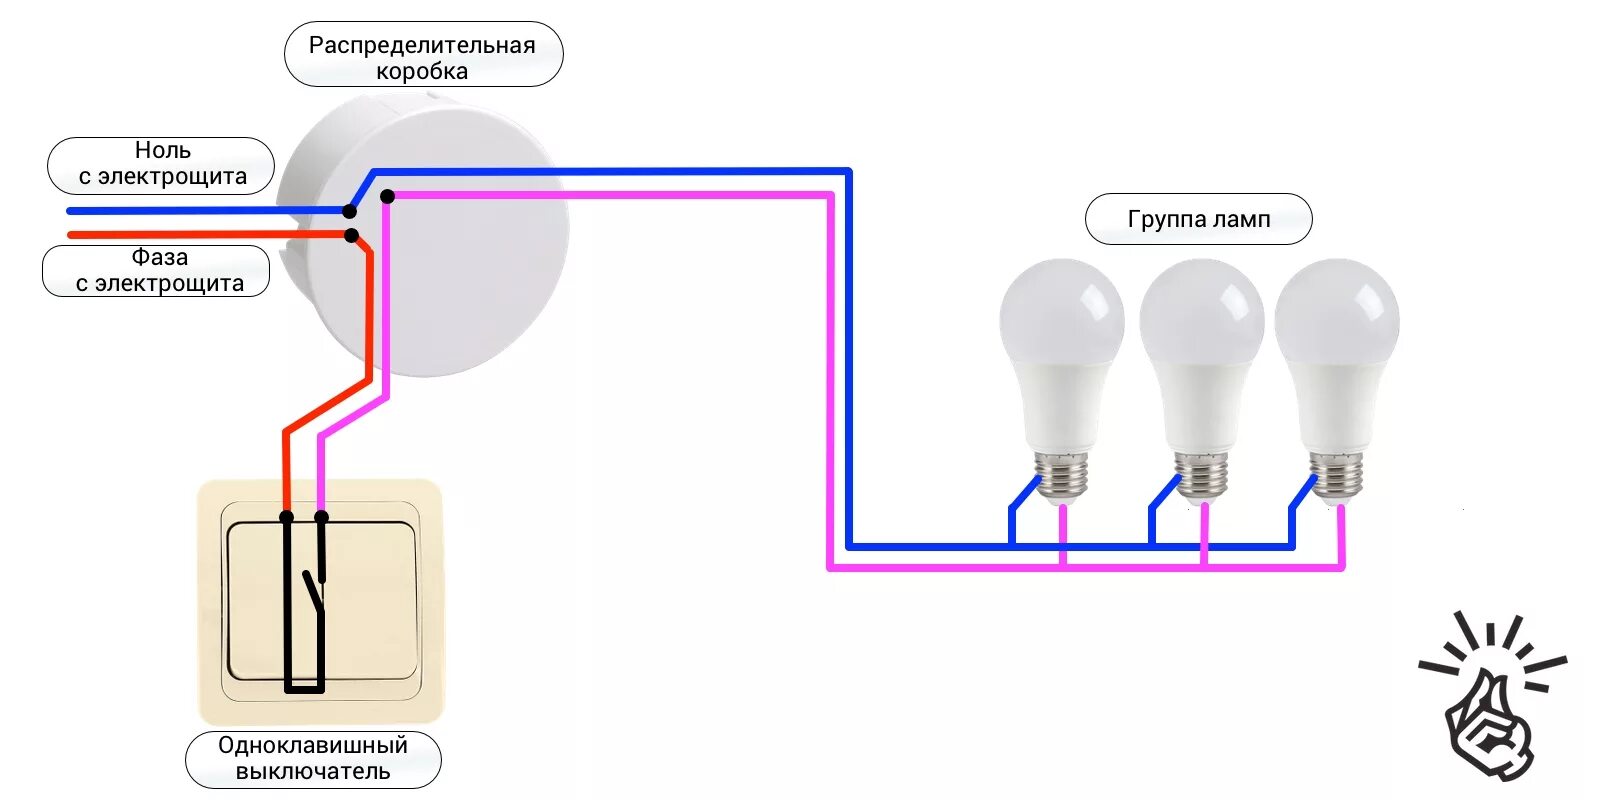 Как подключить выключатель 220. Схема подключения одноклавишного выключателя на две лампочки. Схема подключения одноклавишного выключателя на две лампы. Схема подключения одноклавишного выключателя к лампе. Схема подключения выключателя одноклавишного к 2 лампочкам.